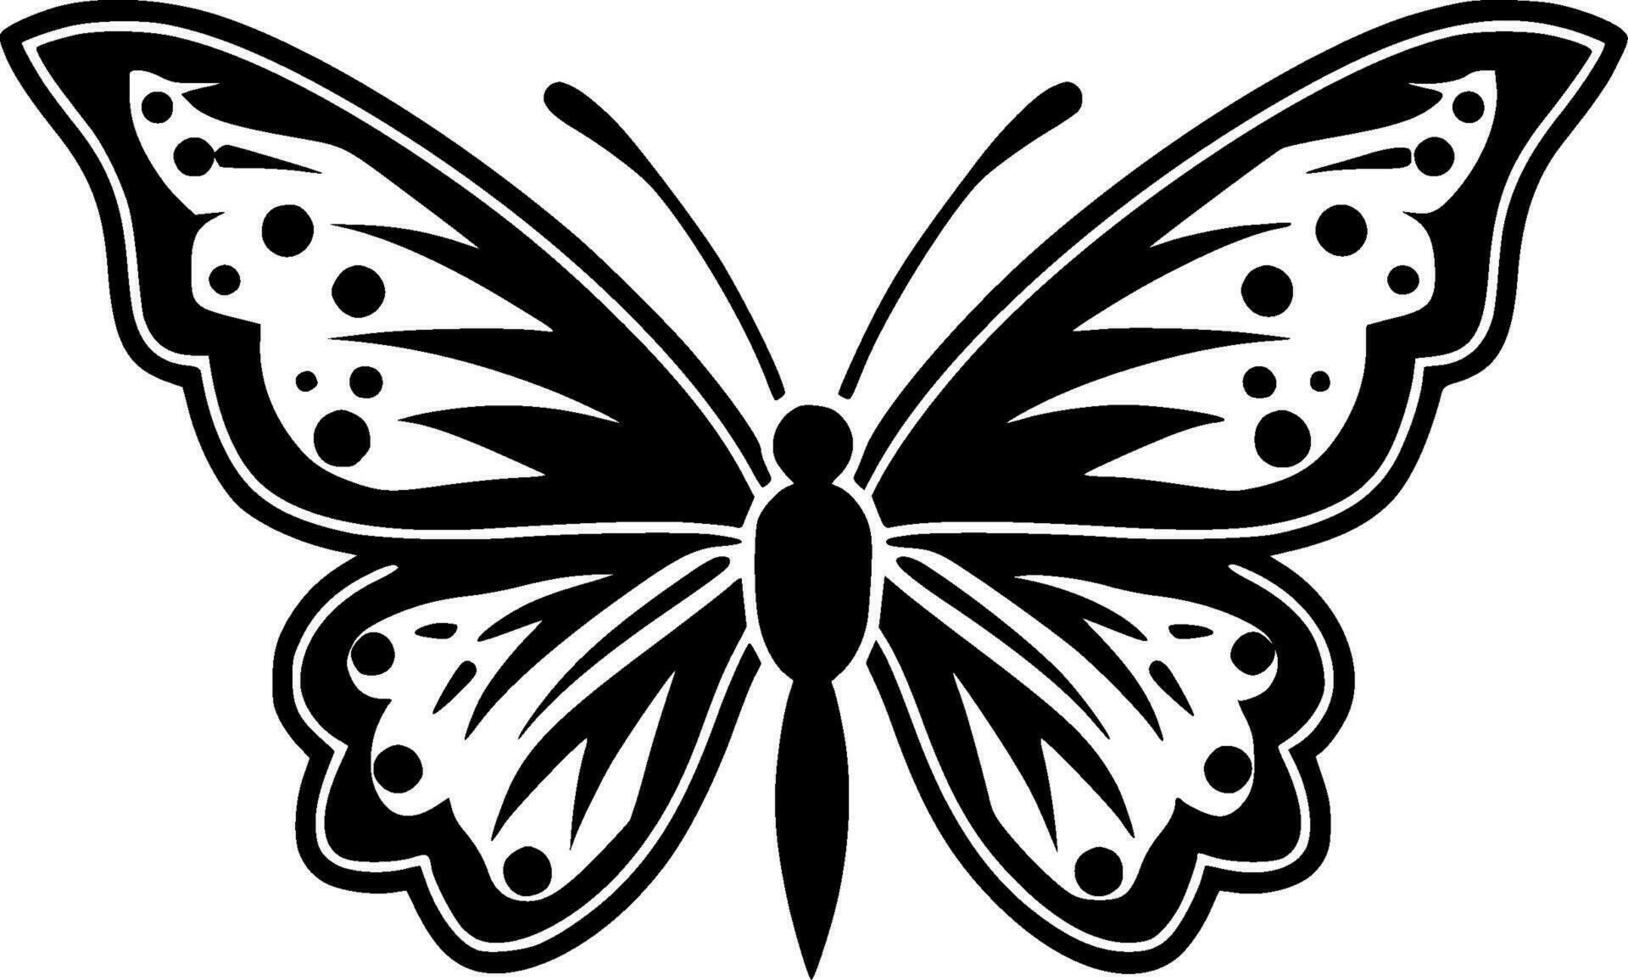 fjäril, minimalistisk och enkel silhuett - vektor illustration